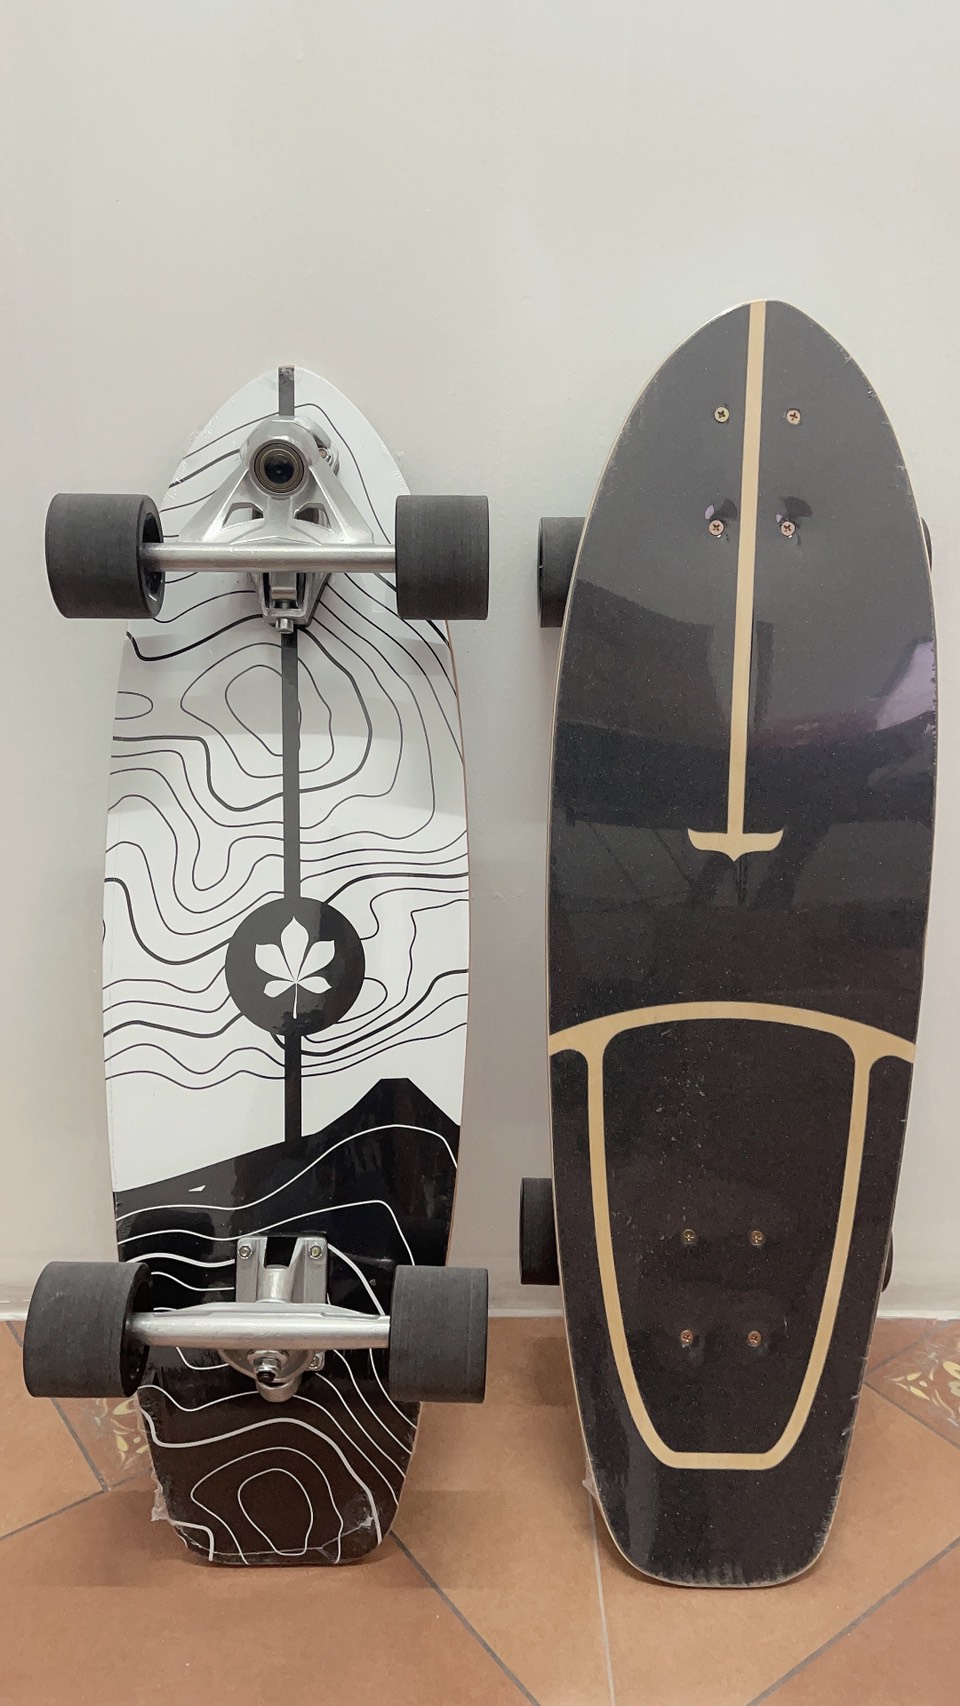 NEW GEELE สเก็ตบอร์ด Surfskate Surf Skateboards CX7 30 นิ้ว  เซิร์ฟสเก็ต แข็งแรง ทนทานสูง